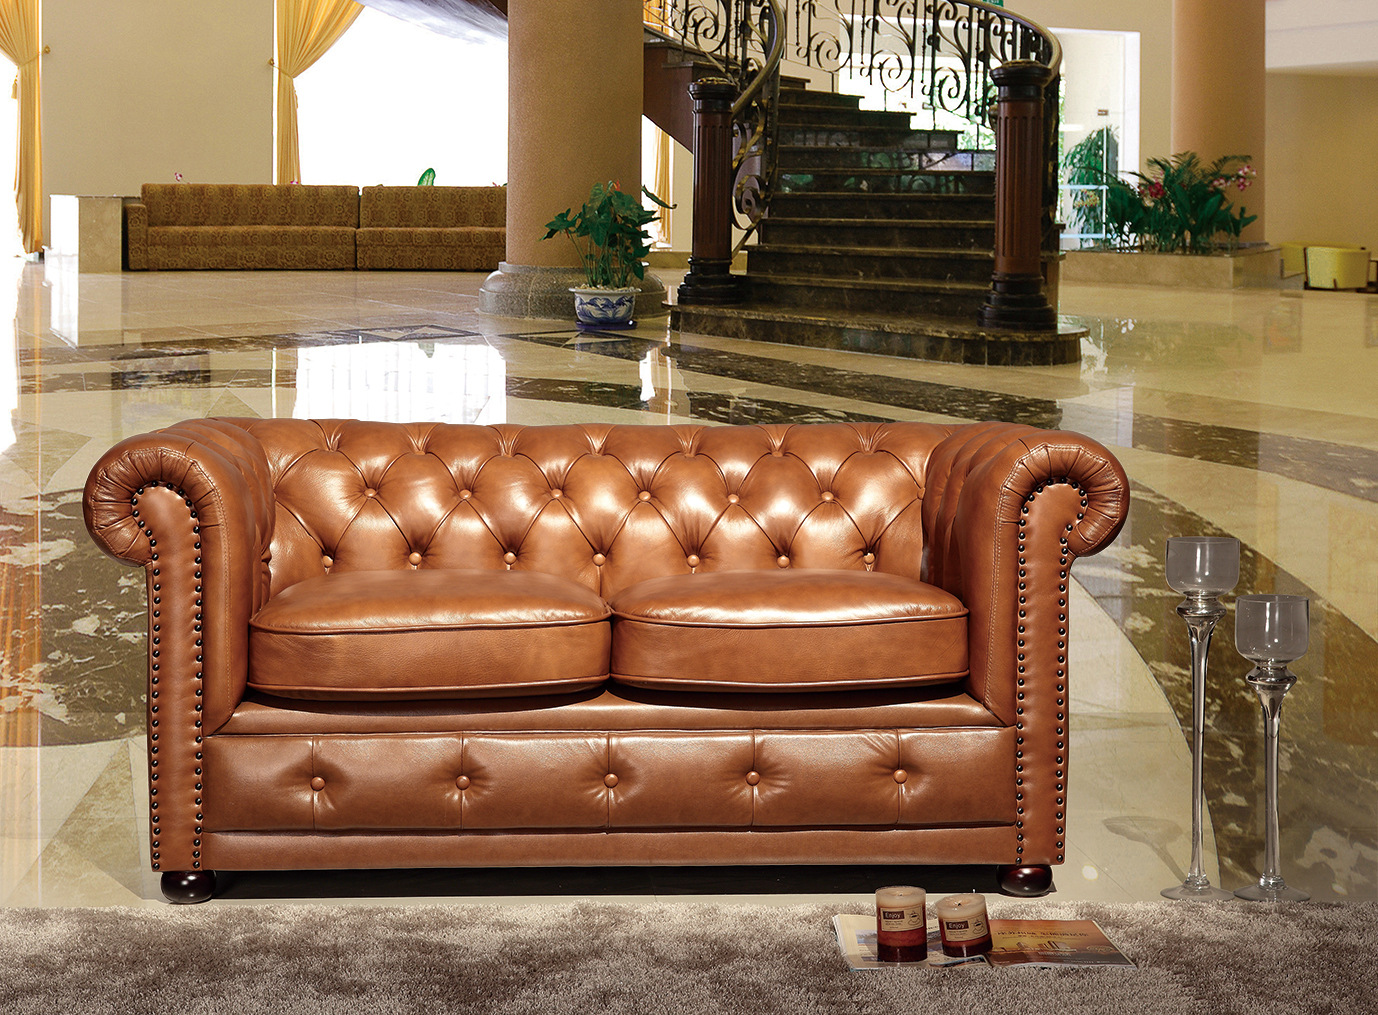 厂家直供新款欧式牛皮沙发 经典客厅组合沙发 真皮家居沙发